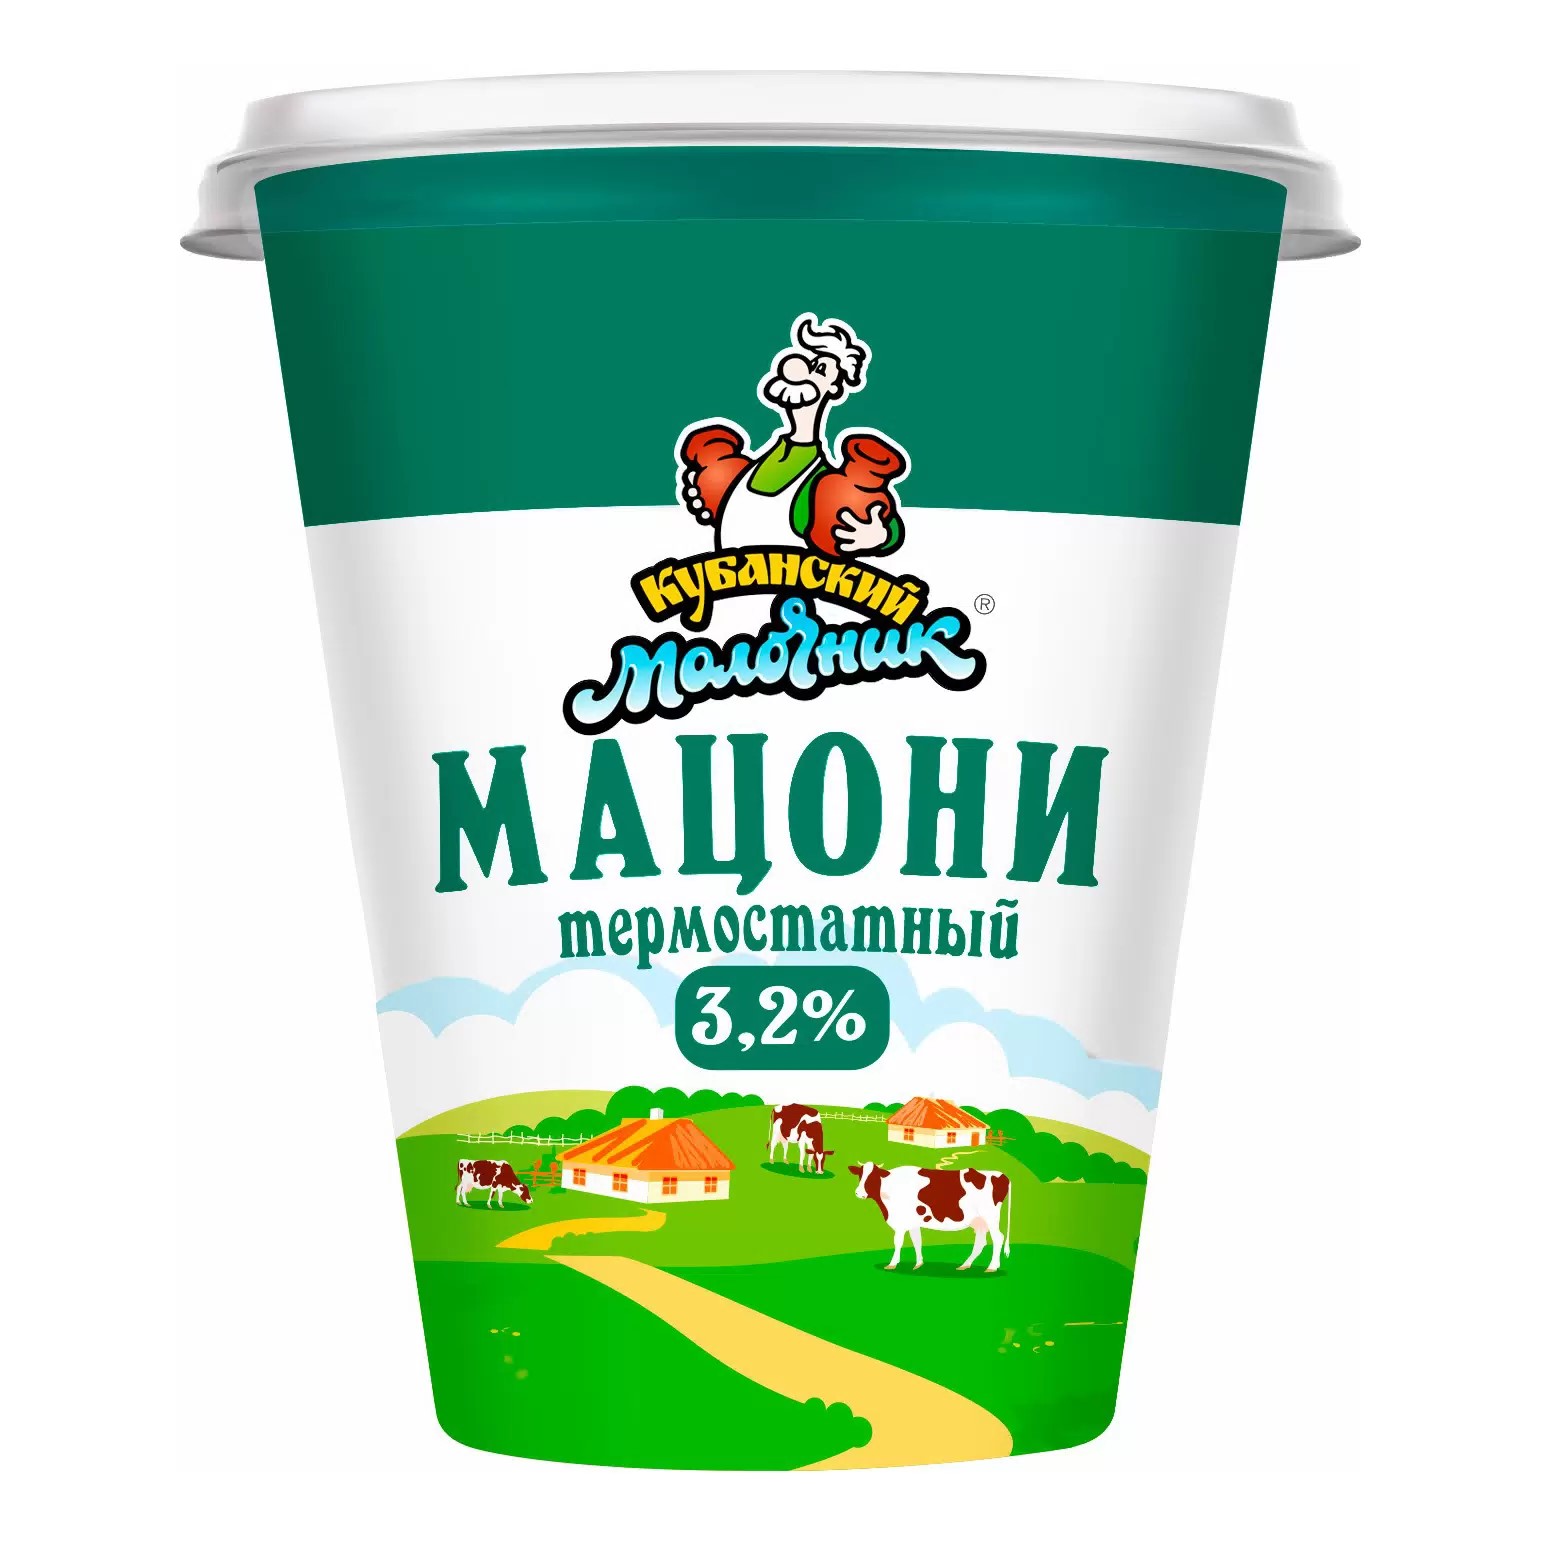 Мацони «Ленинградский Премиум» Кубанский молочник 3,2% термостатный 260 гр